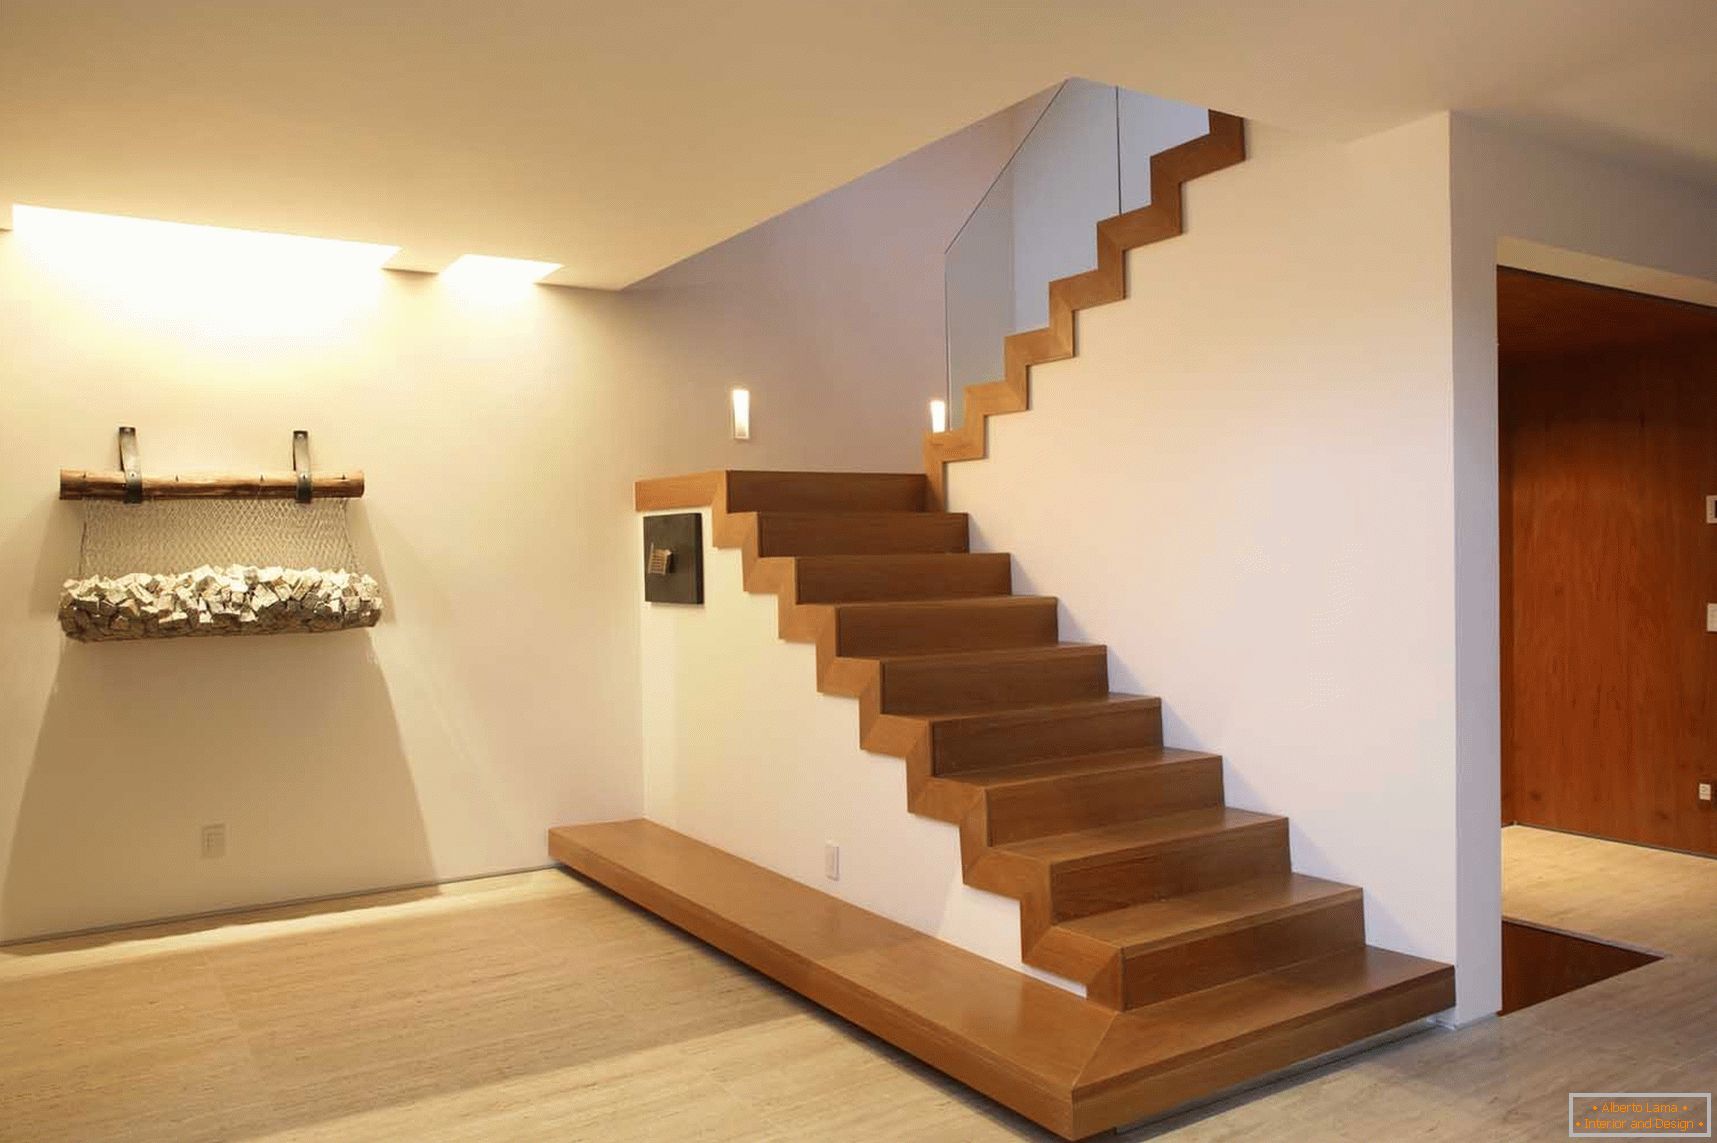 Stepenice u stilu minimalizma